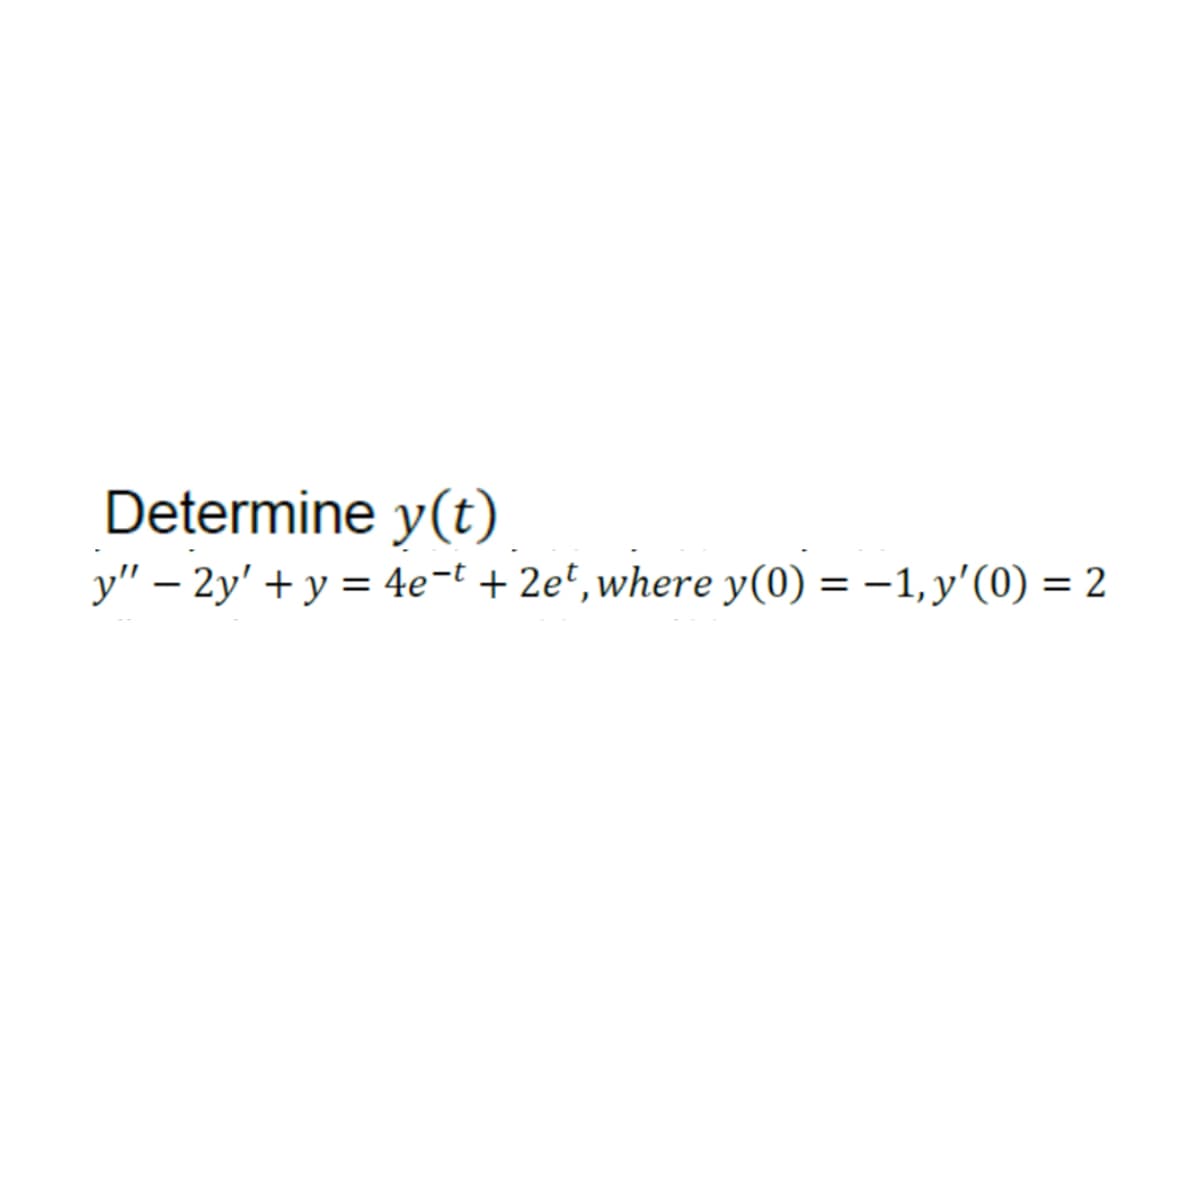 Determine y(t)
y" - 2y' + y = 4e-t + 2et, where y(0) = −1, y'(0) = 2